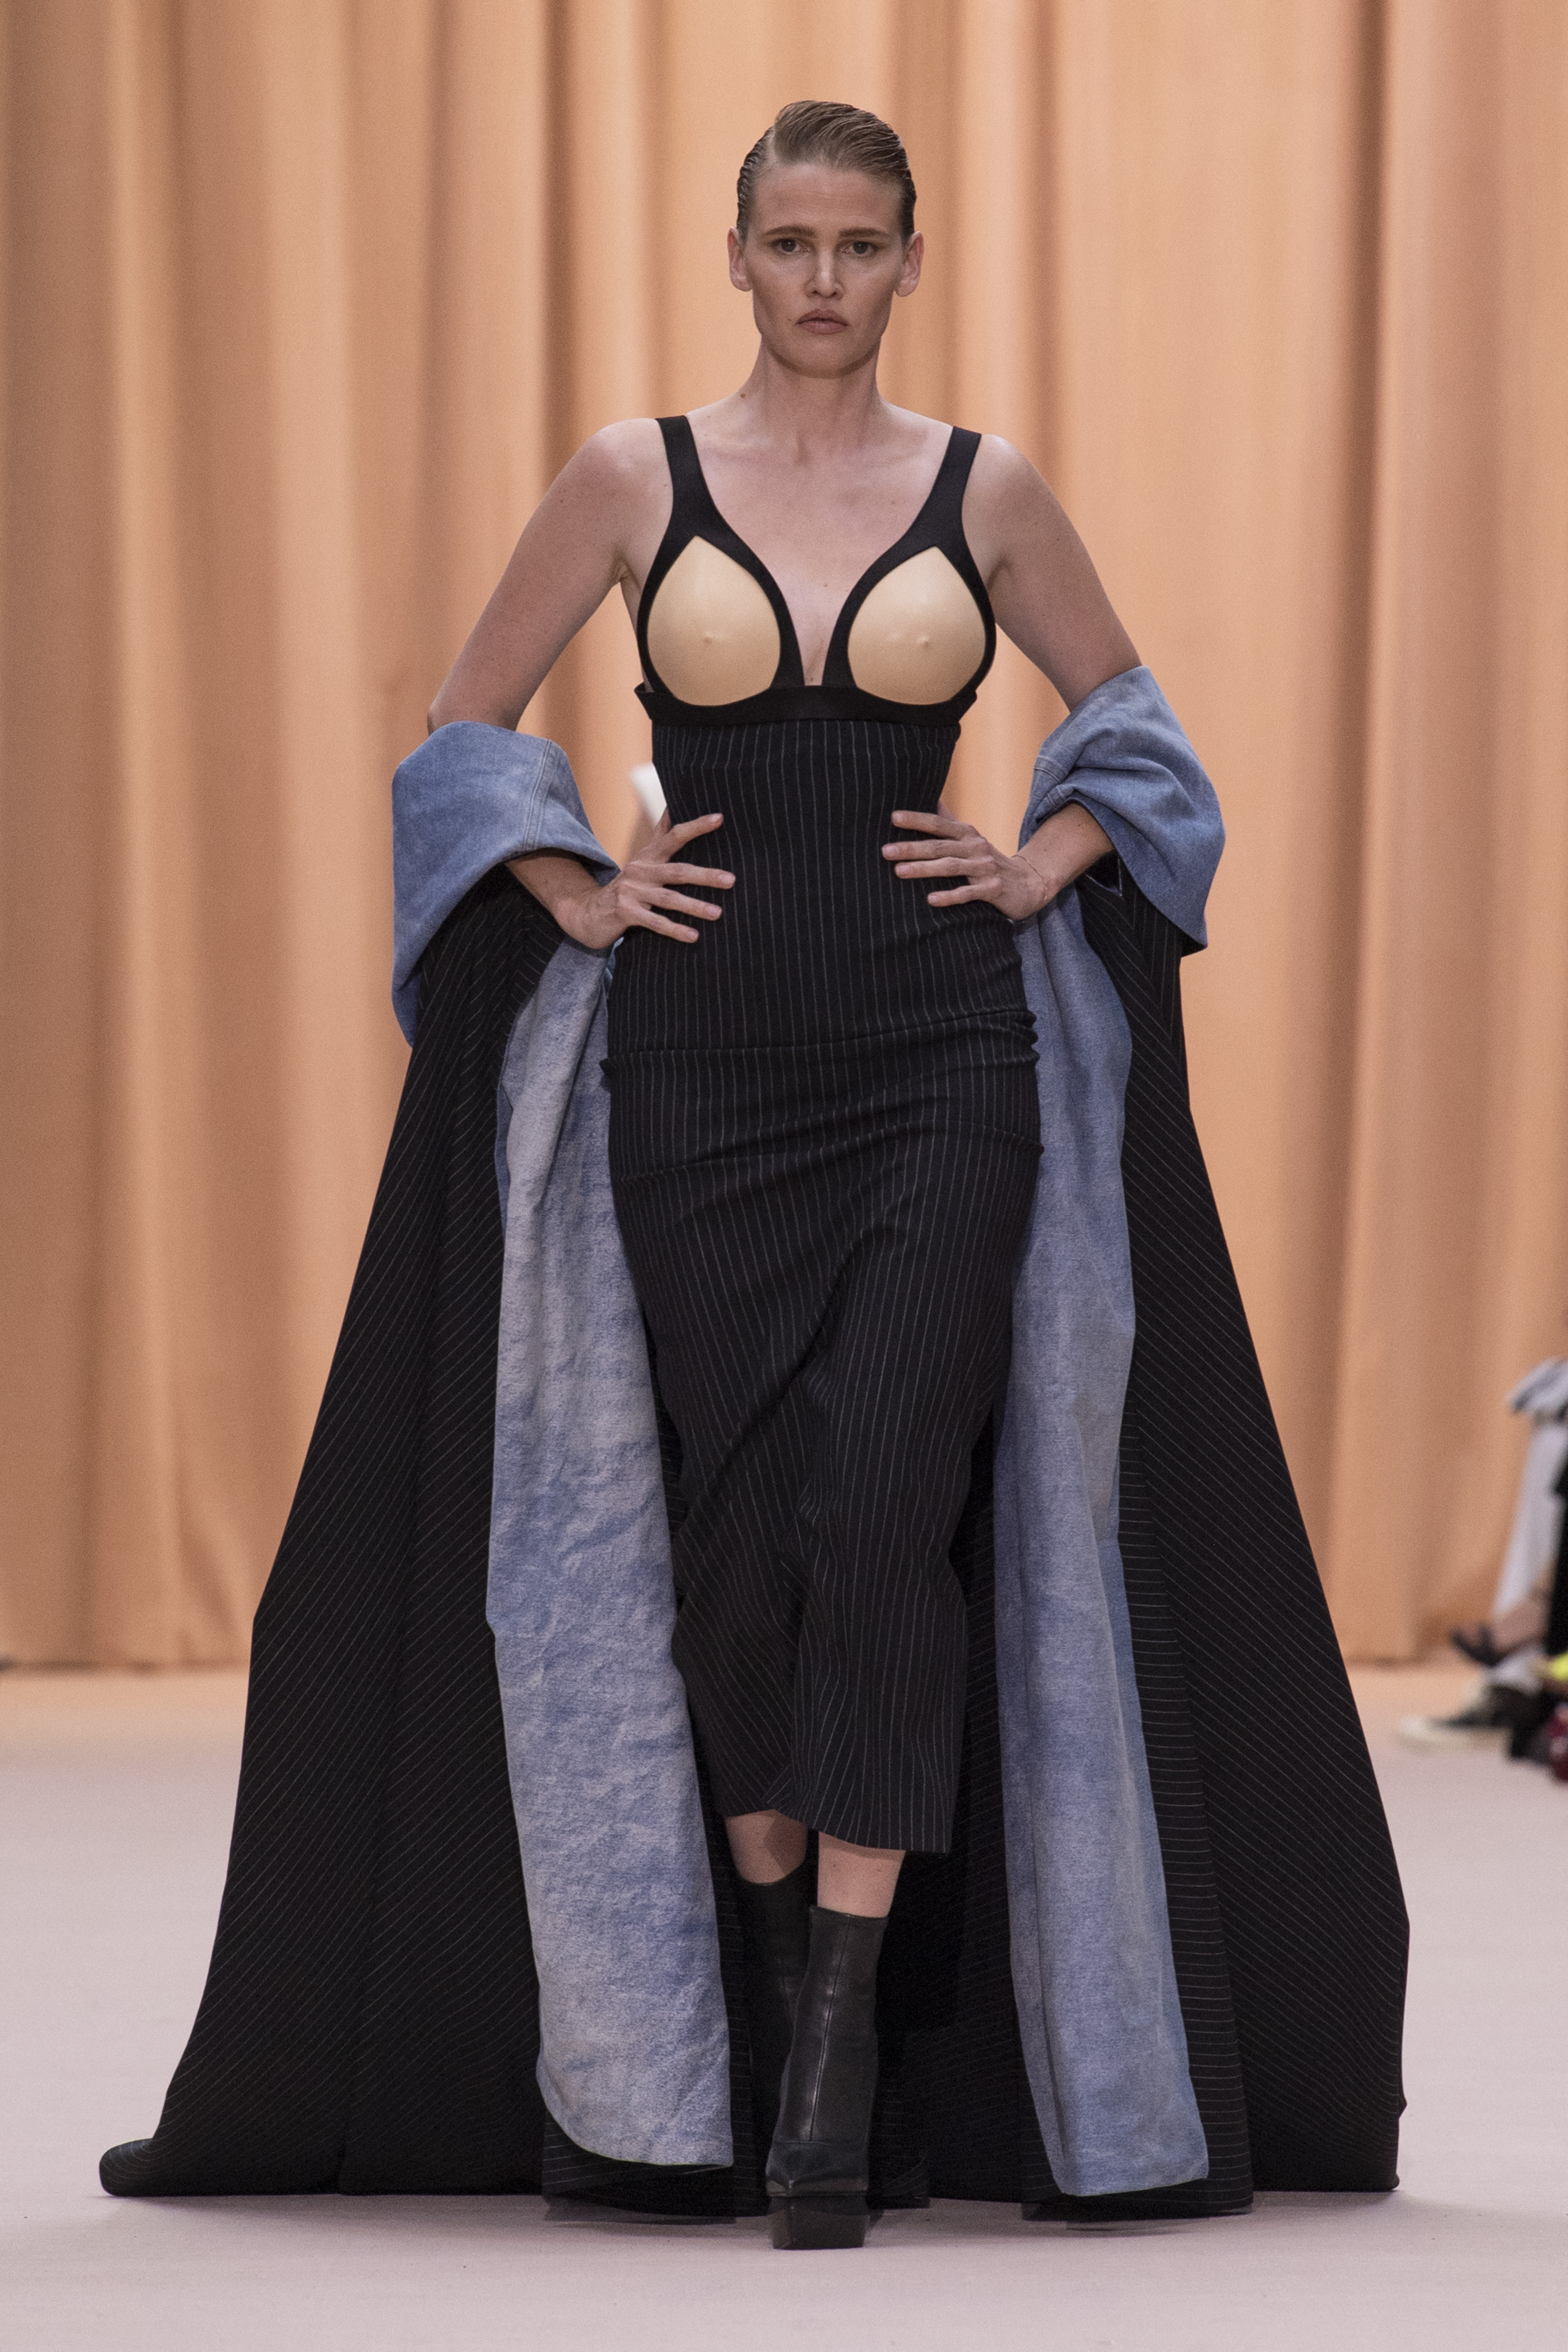 Оливье Рустен решил переосмыслить наследие Жана Поля Готье в своей новой коллекции одежды